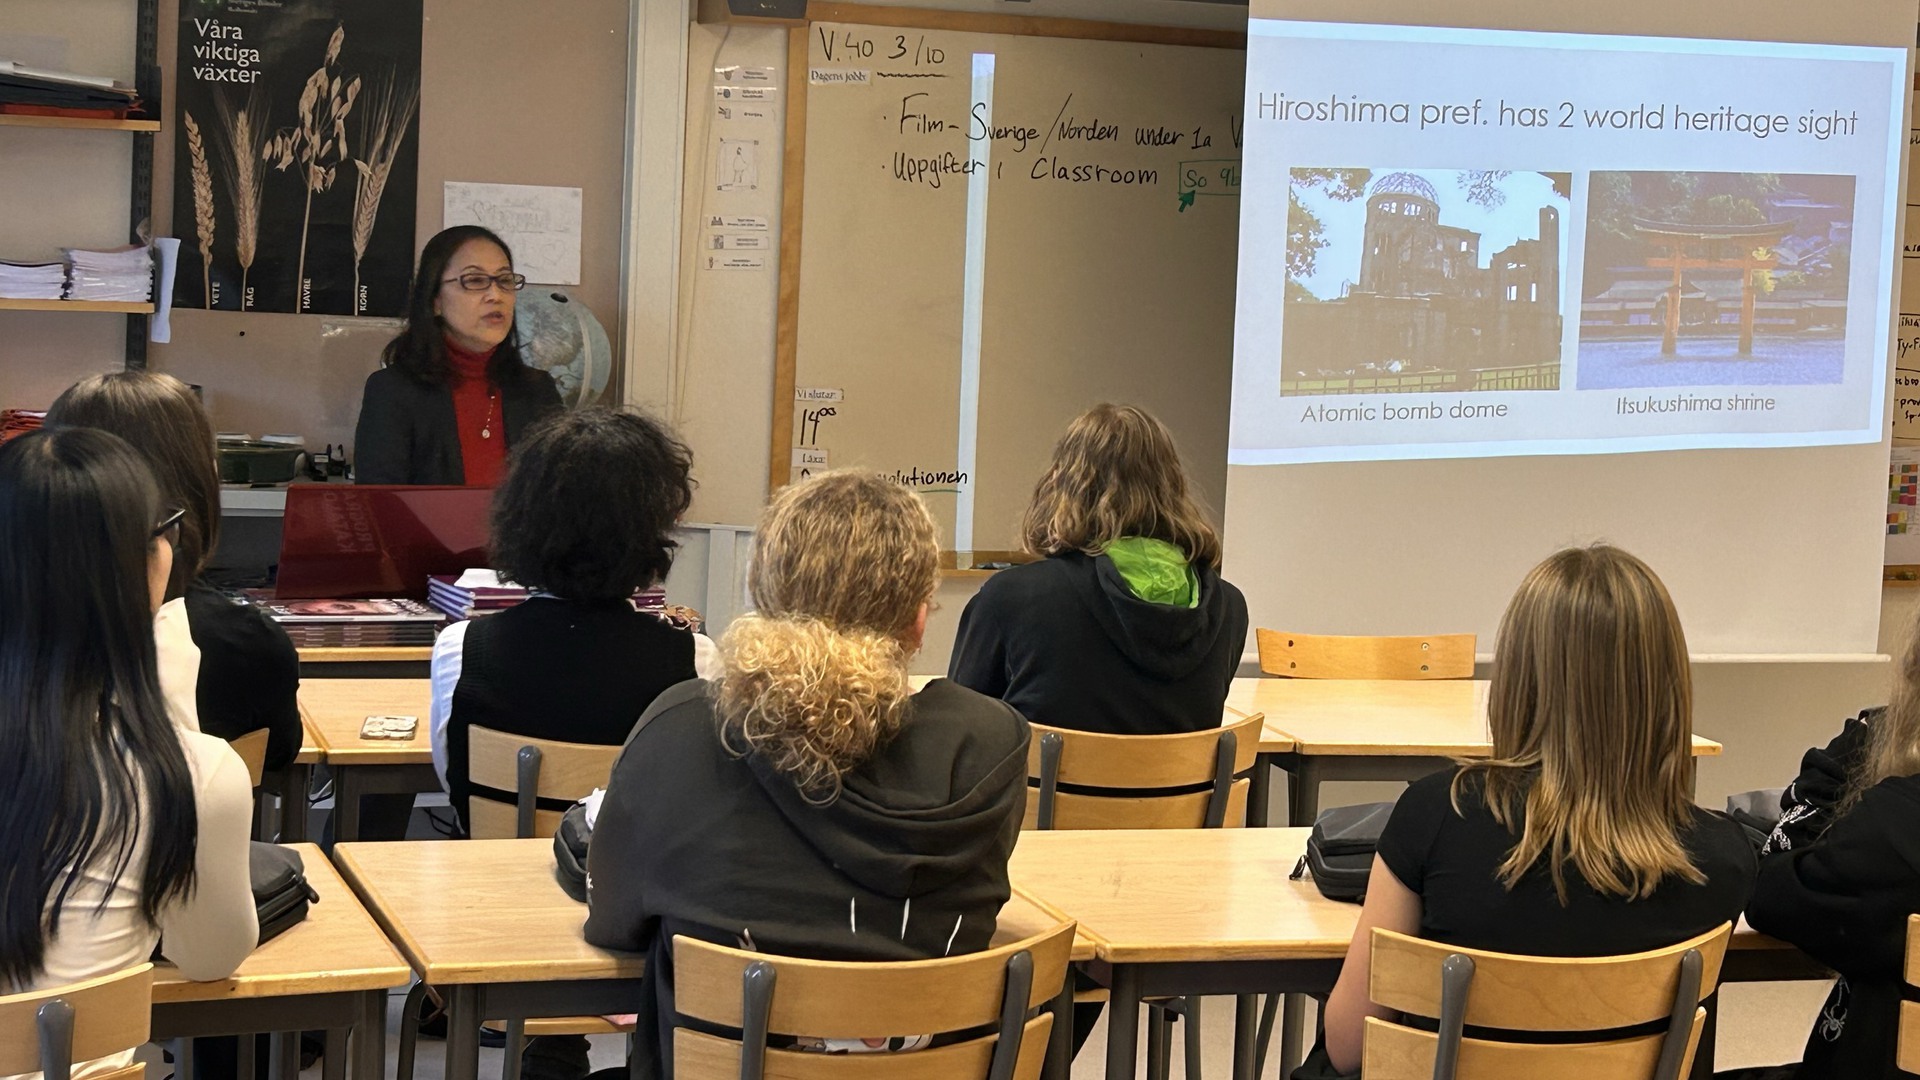 En lärare står framme i klassrummet och undervisar elever som sitter på stolar vid bord. På en projektorduk visas en powerpointpresentation.